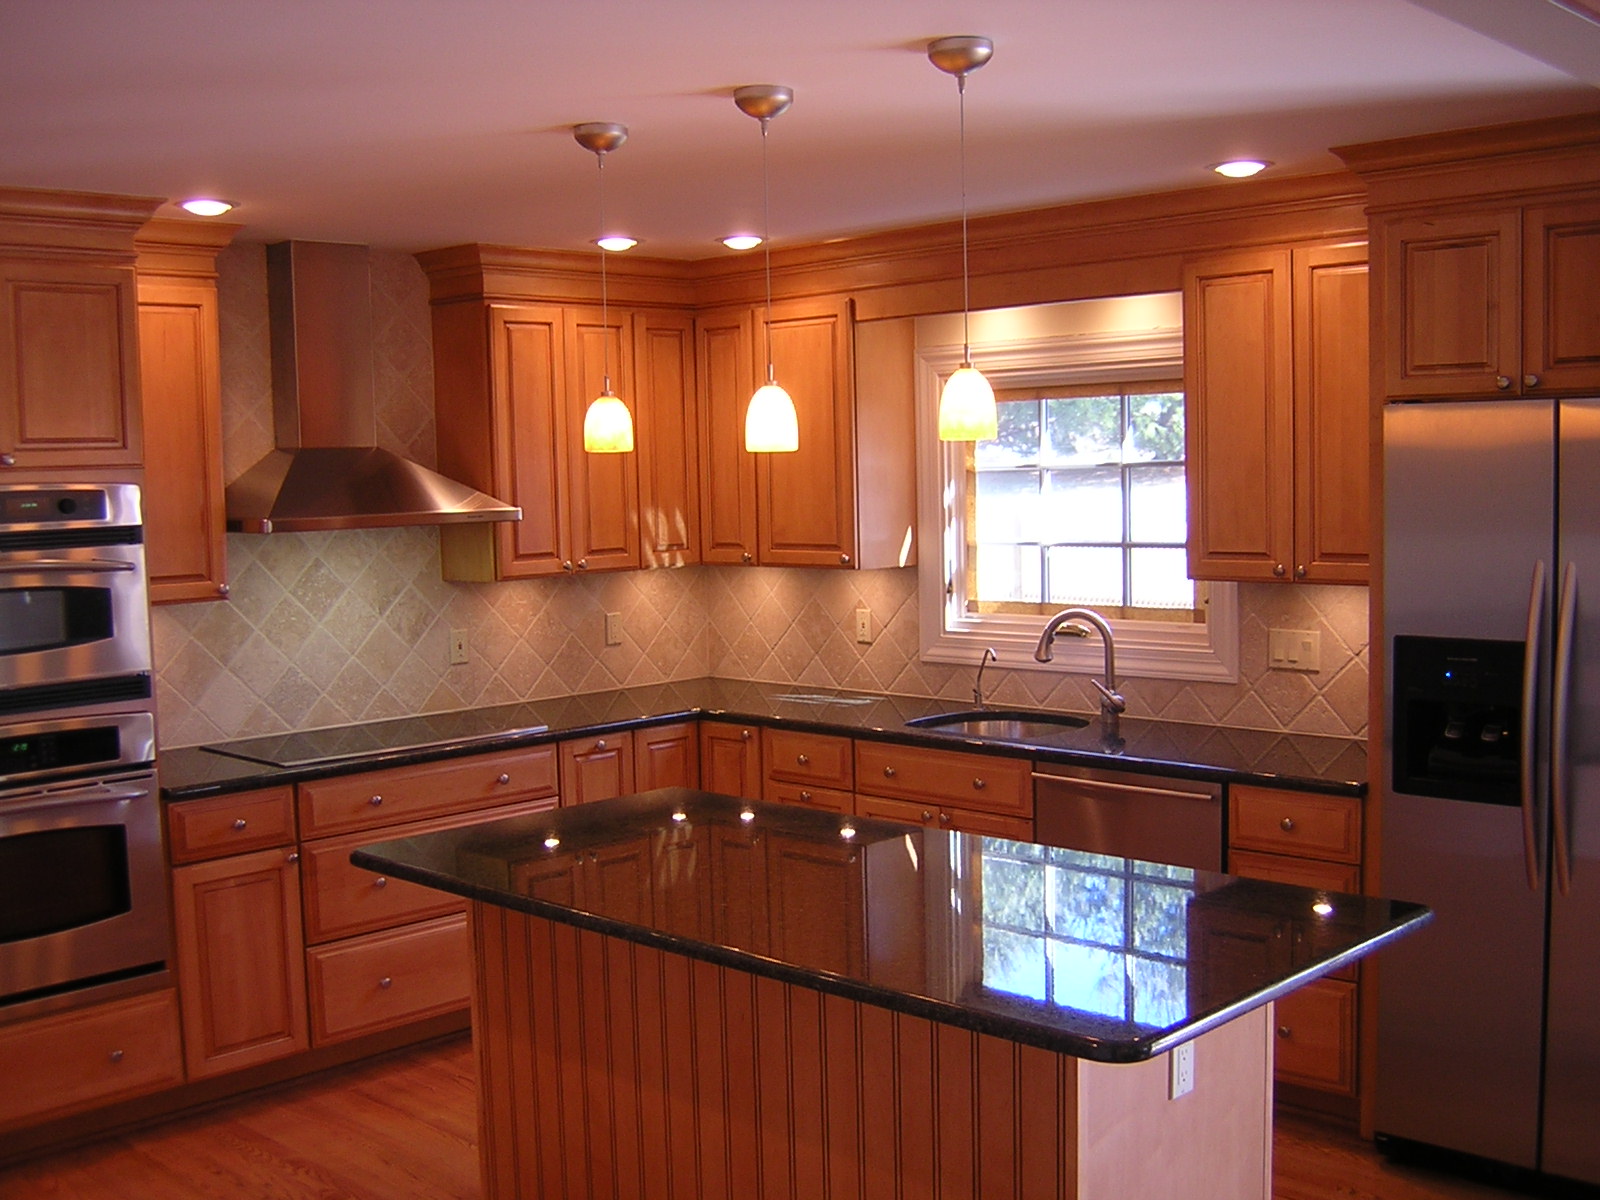 granite kitchen countertop designs photo - 9